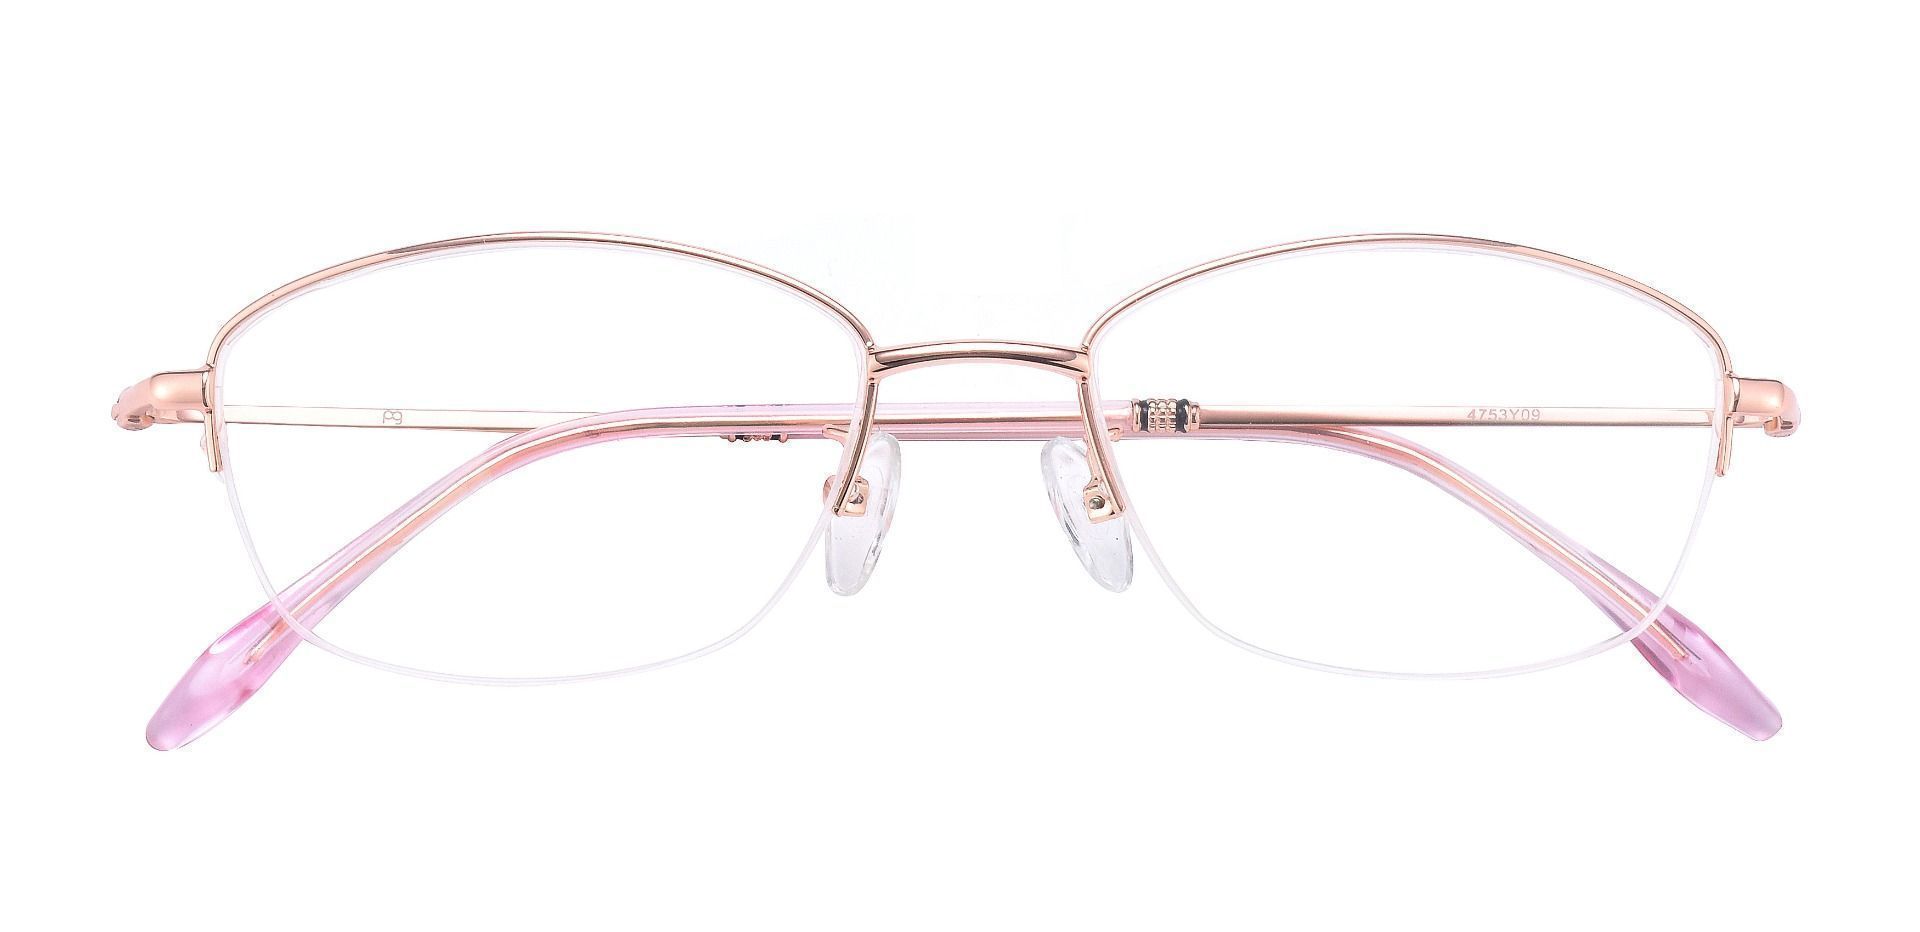 Mendoza Oval Non-Rx Glasses - Rose Gold